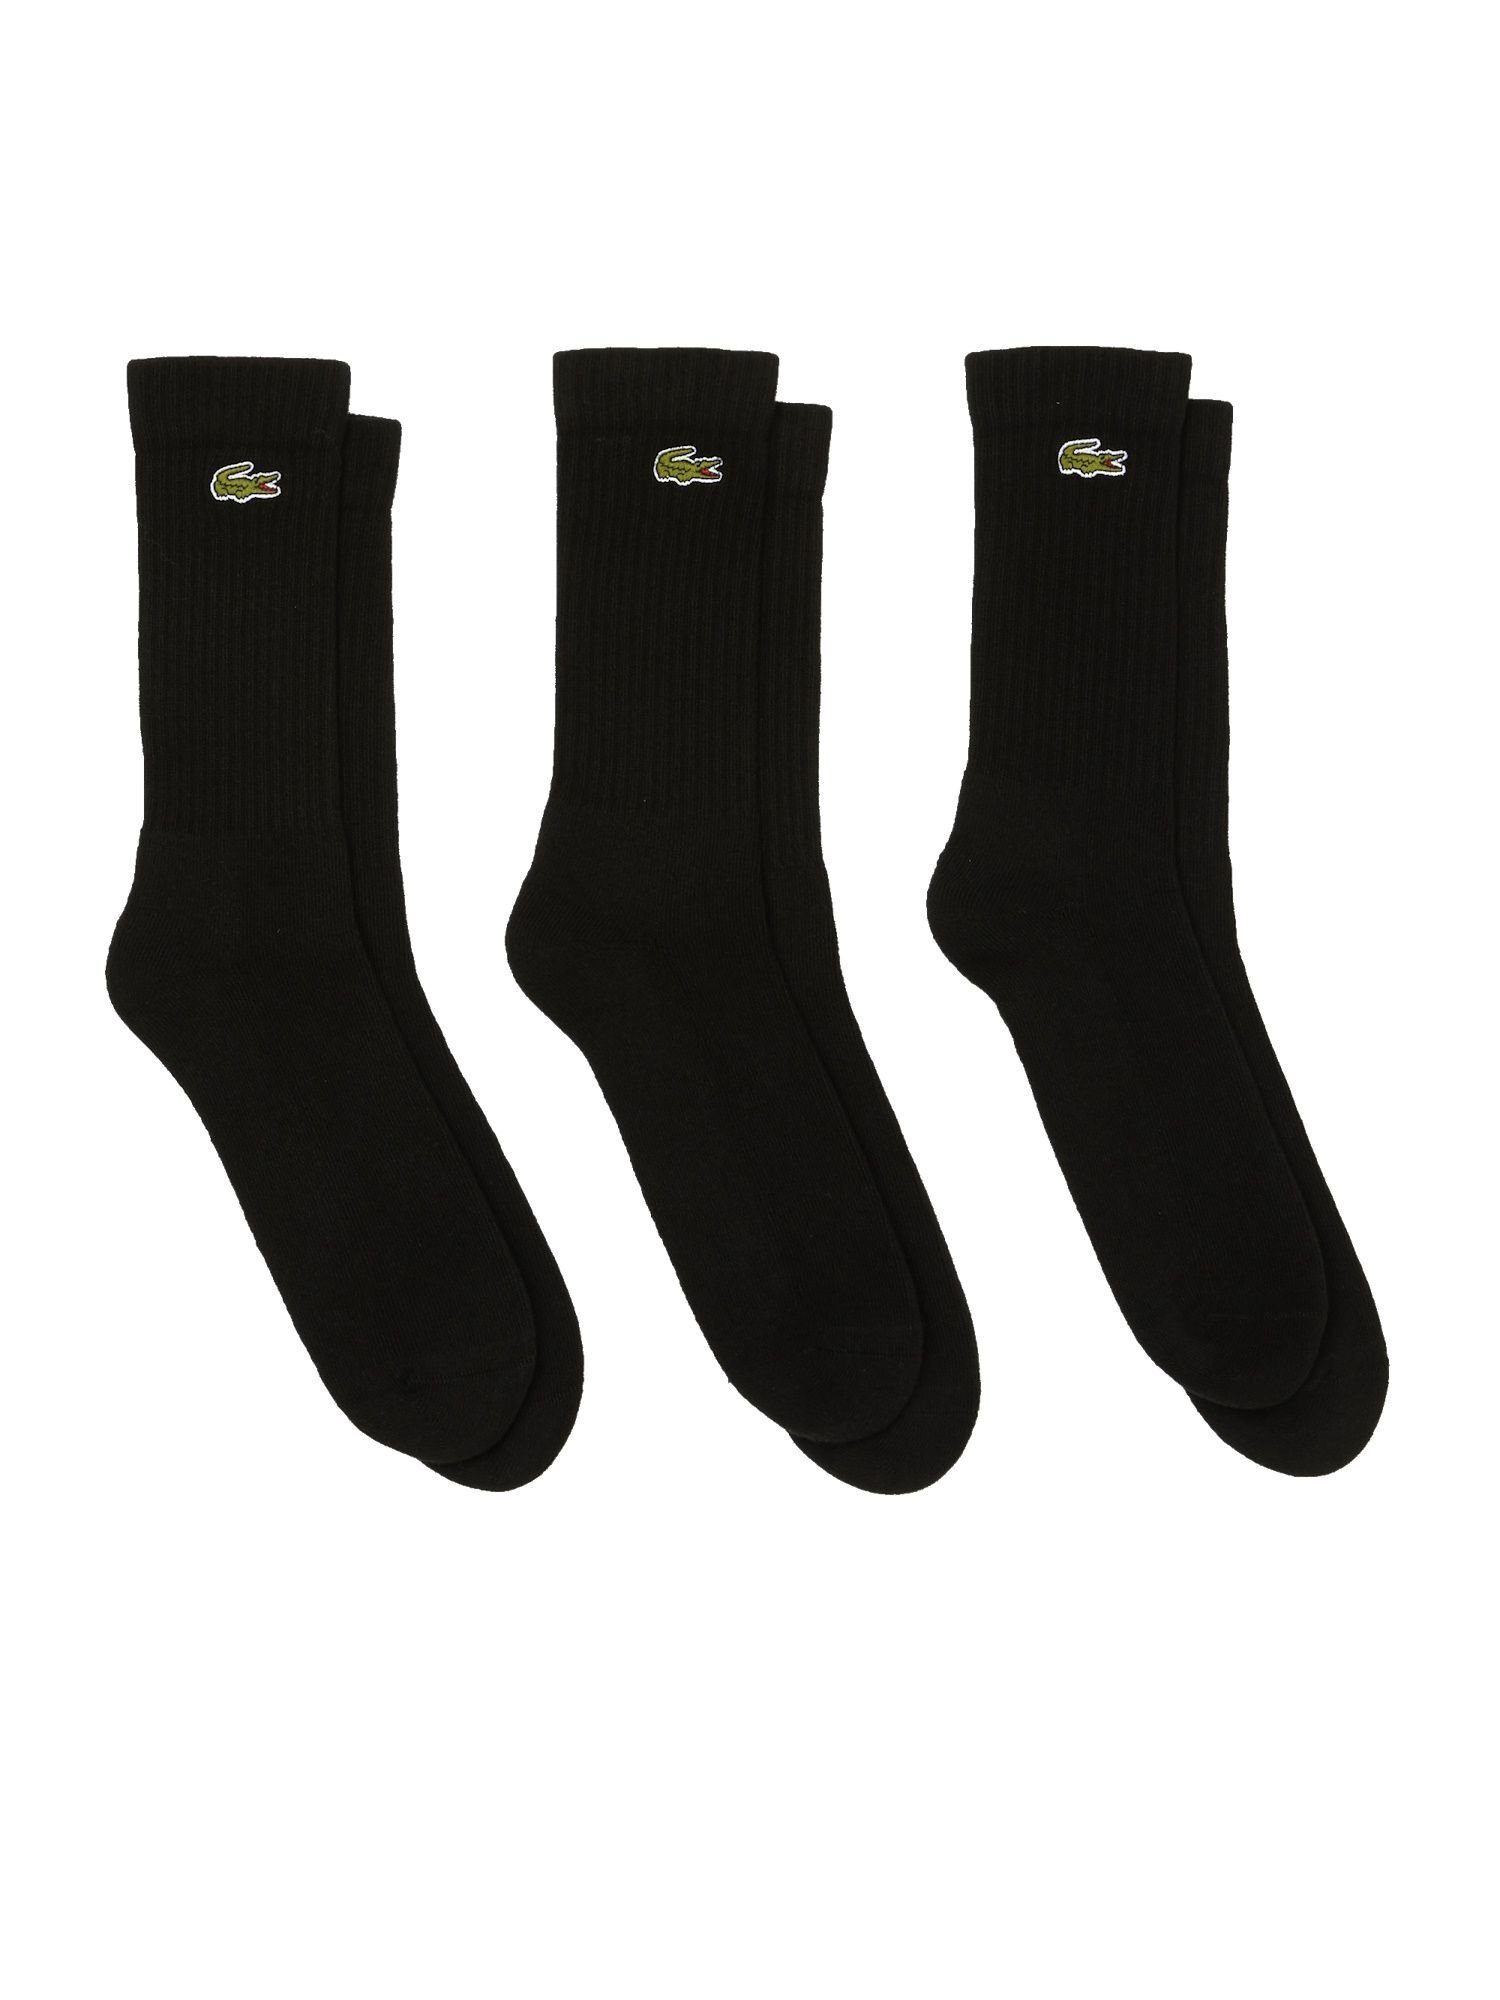 Lacoste Socken Socken hohe schwarz (3-Paar) Offer Permanent Socken Dreierpack